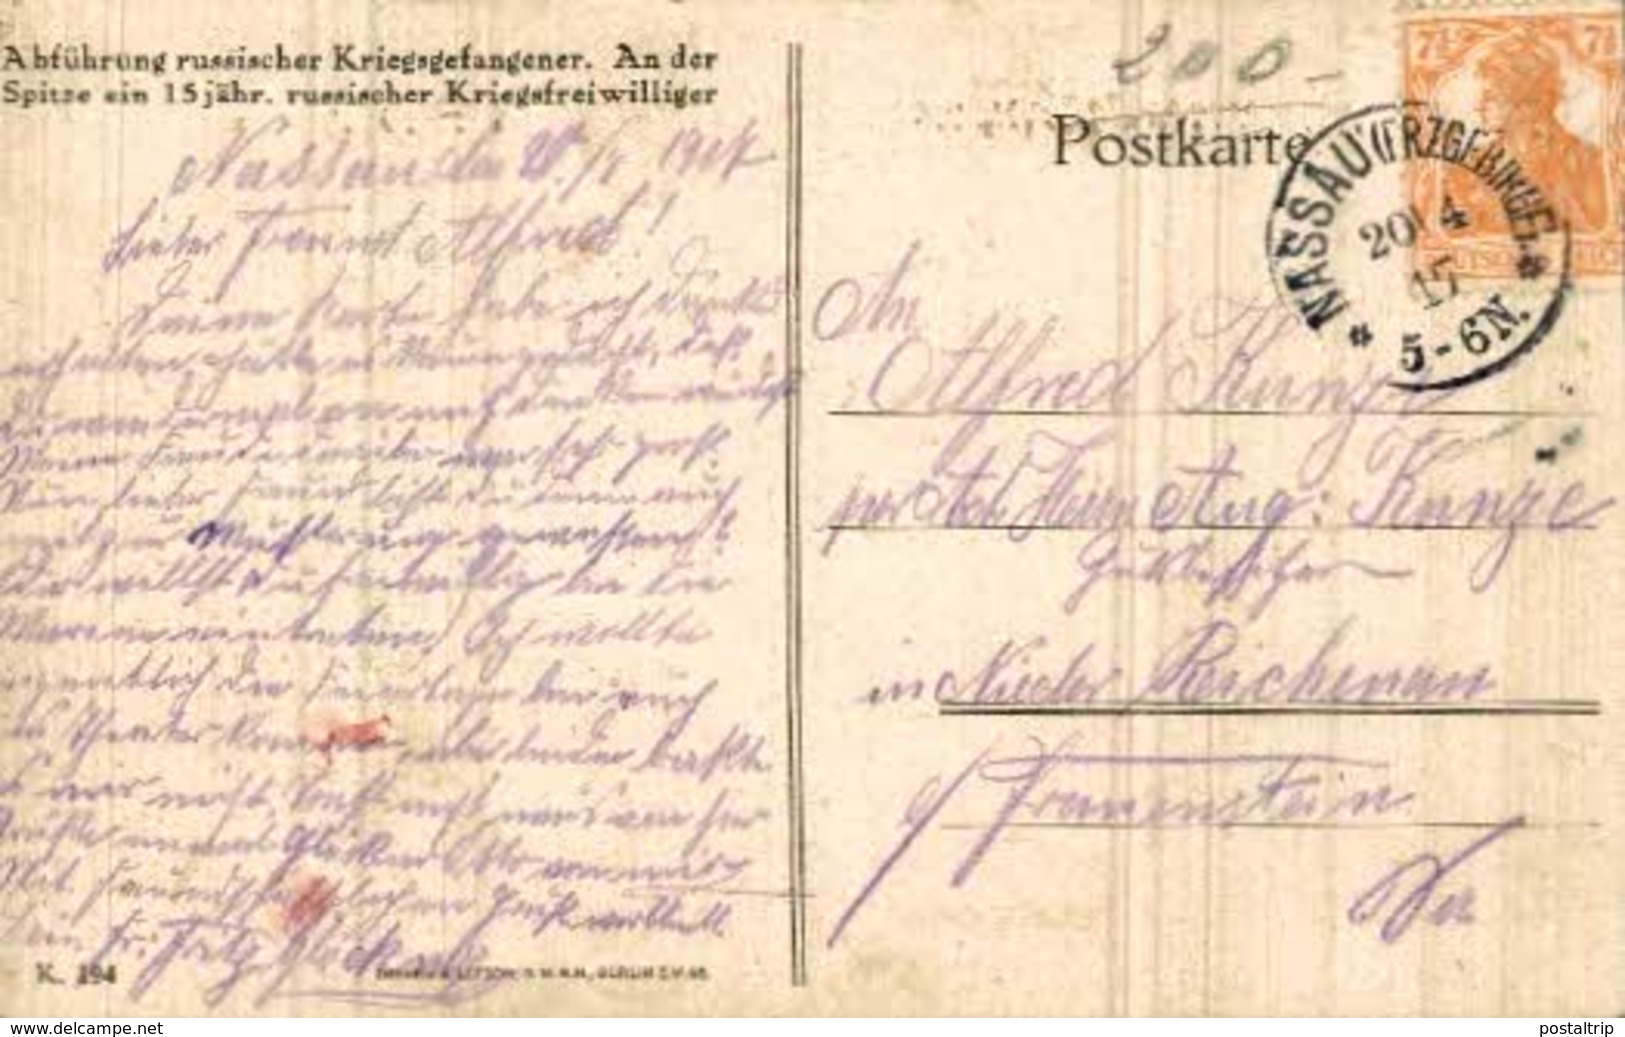 Abführung Russischer Kriegsgefangener - 15jähriger Kriegsfreiwilliger 1914/15  WWI WWICOLLECTION - Russia